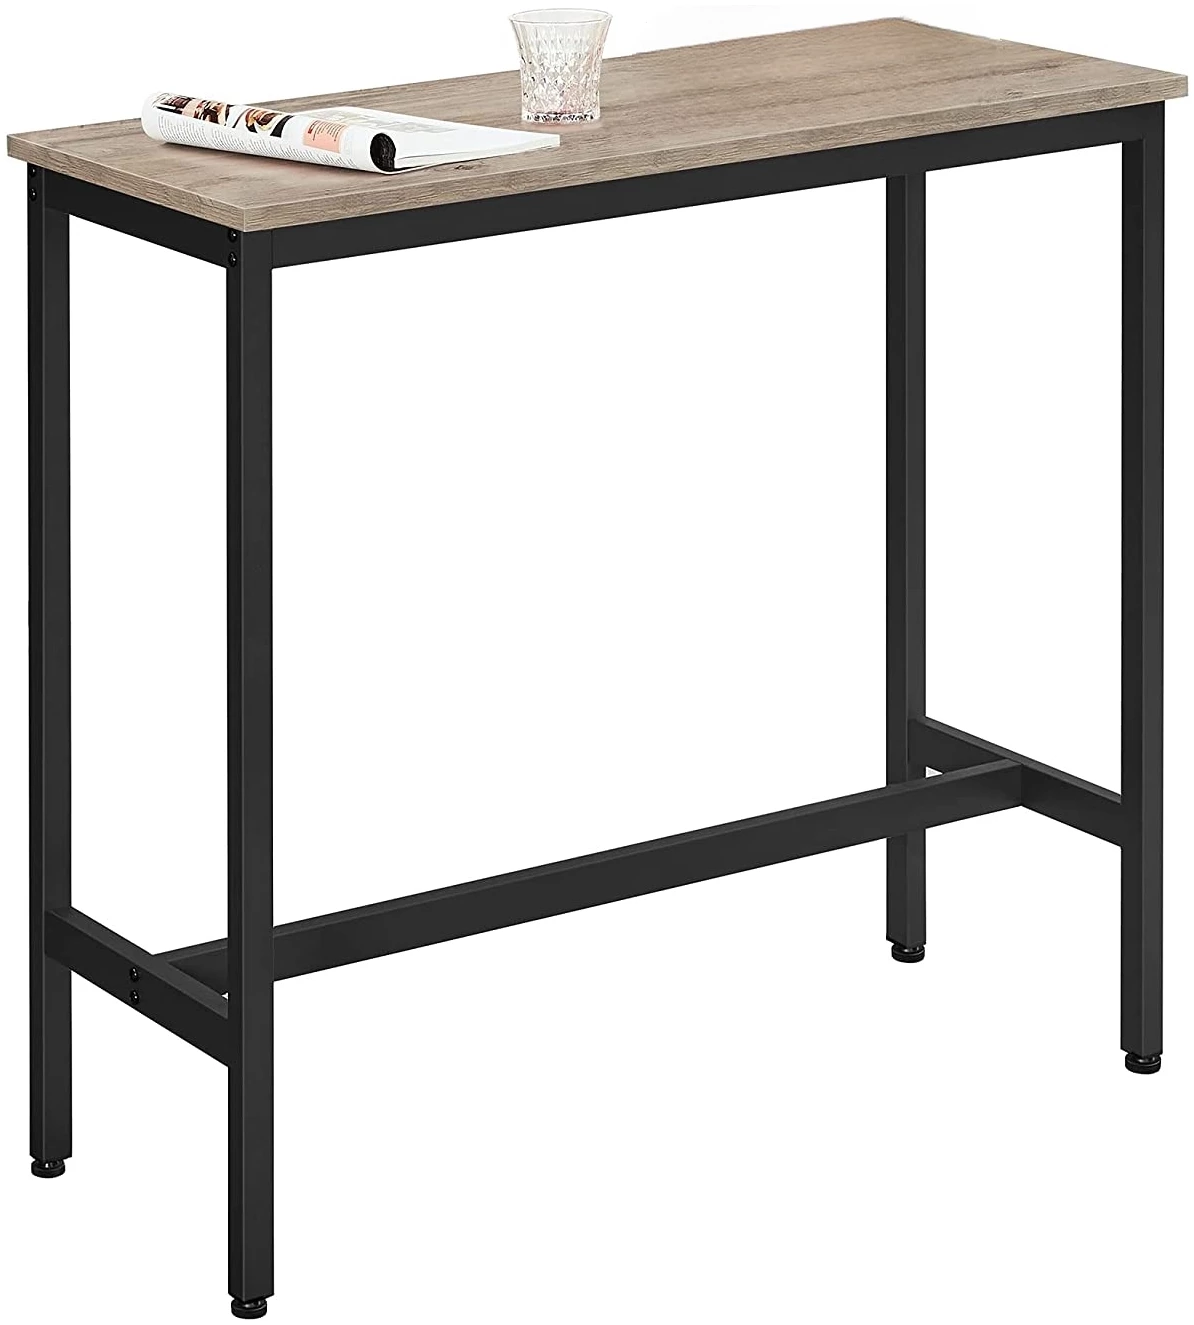 Baaripöytä, Keittiön pöytä 100 x 40 x 90 cm Industrial, Greige -  Dealproffsen.fi